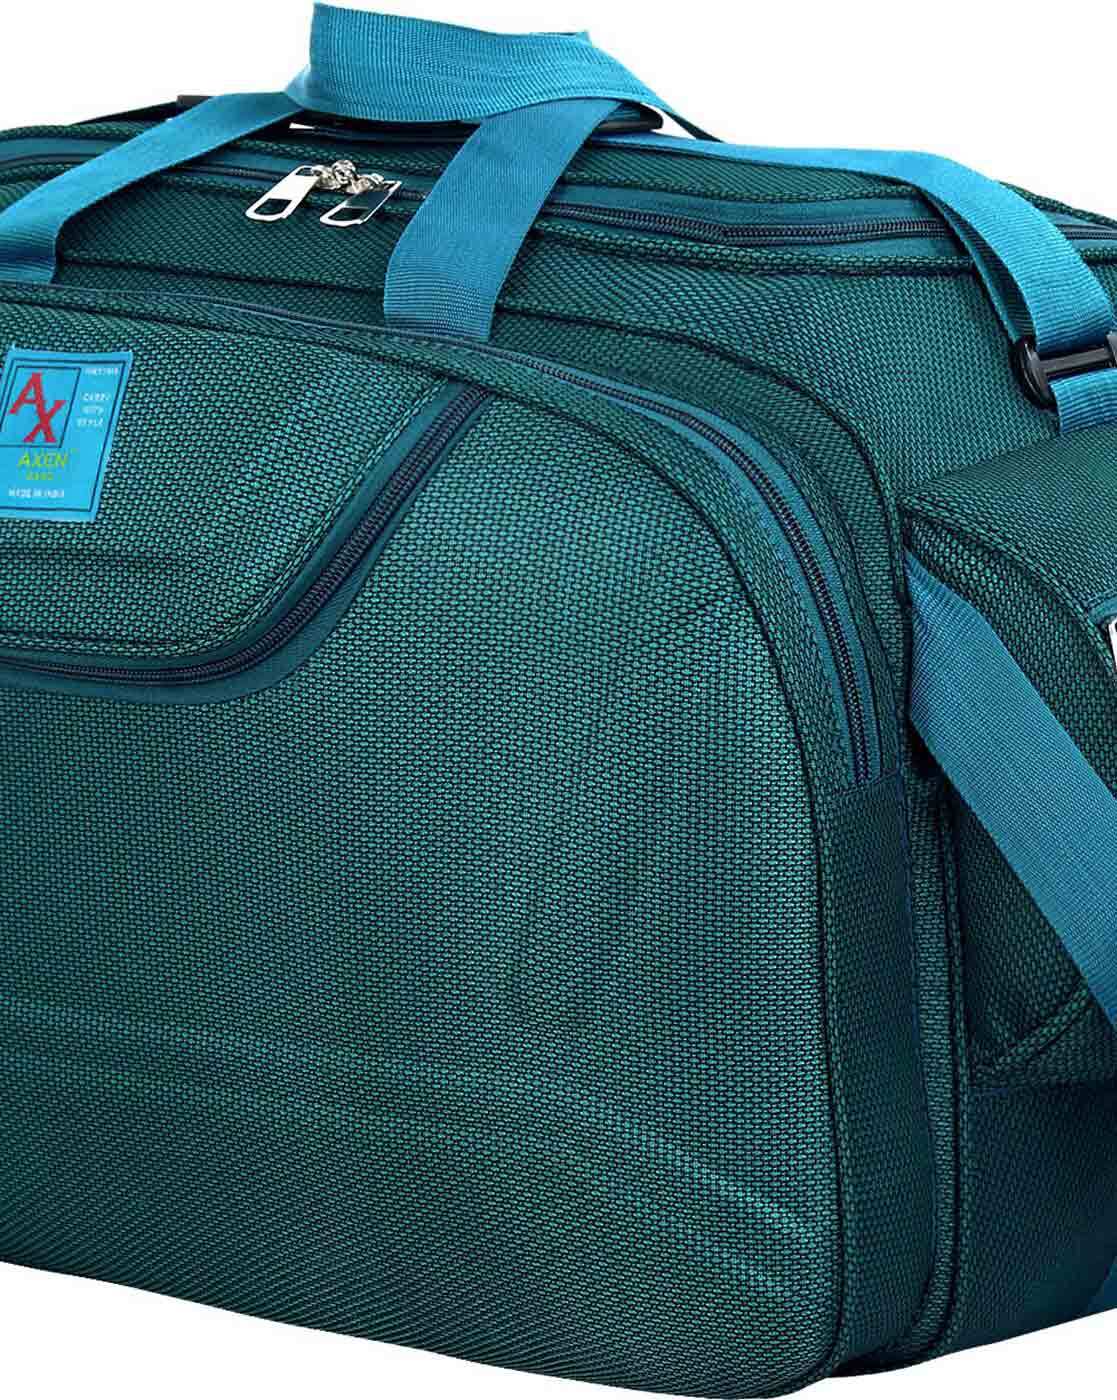 Buy Green Travel Bags for Men by AXEN BAGS Online  Ajiocom